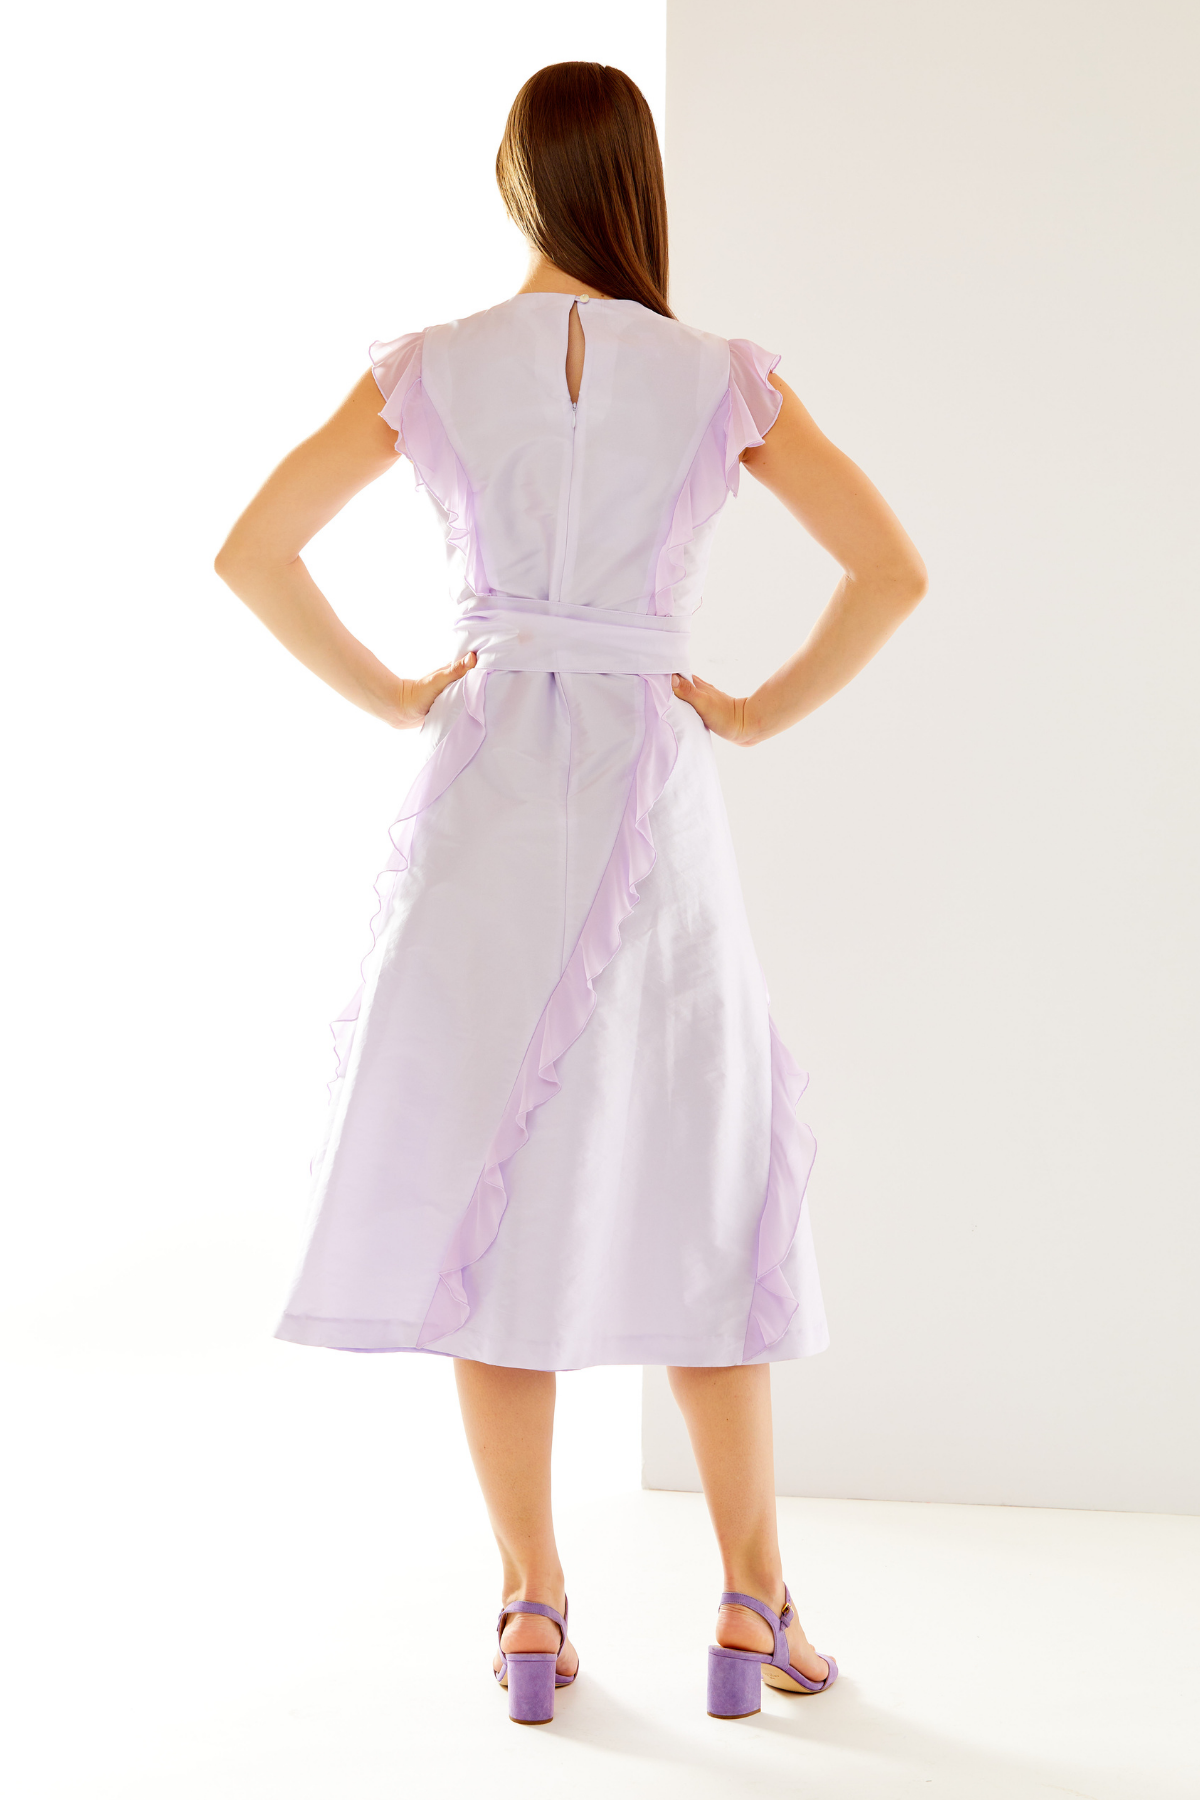 Woman in lilac taffeta dress